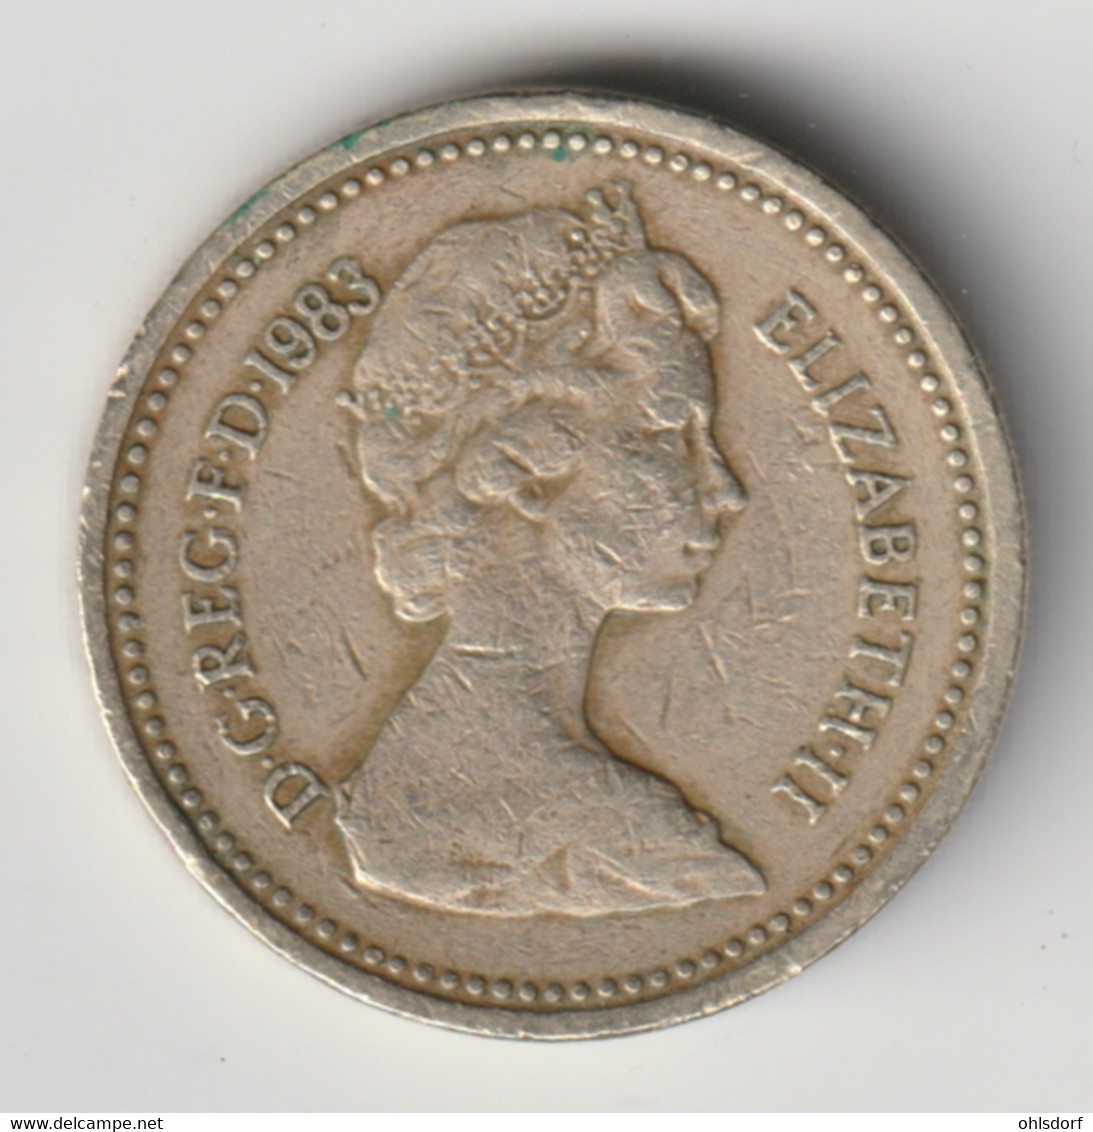 GREAT BRITAIN 1983: 1 Pound, KM 933 - 1 Pound